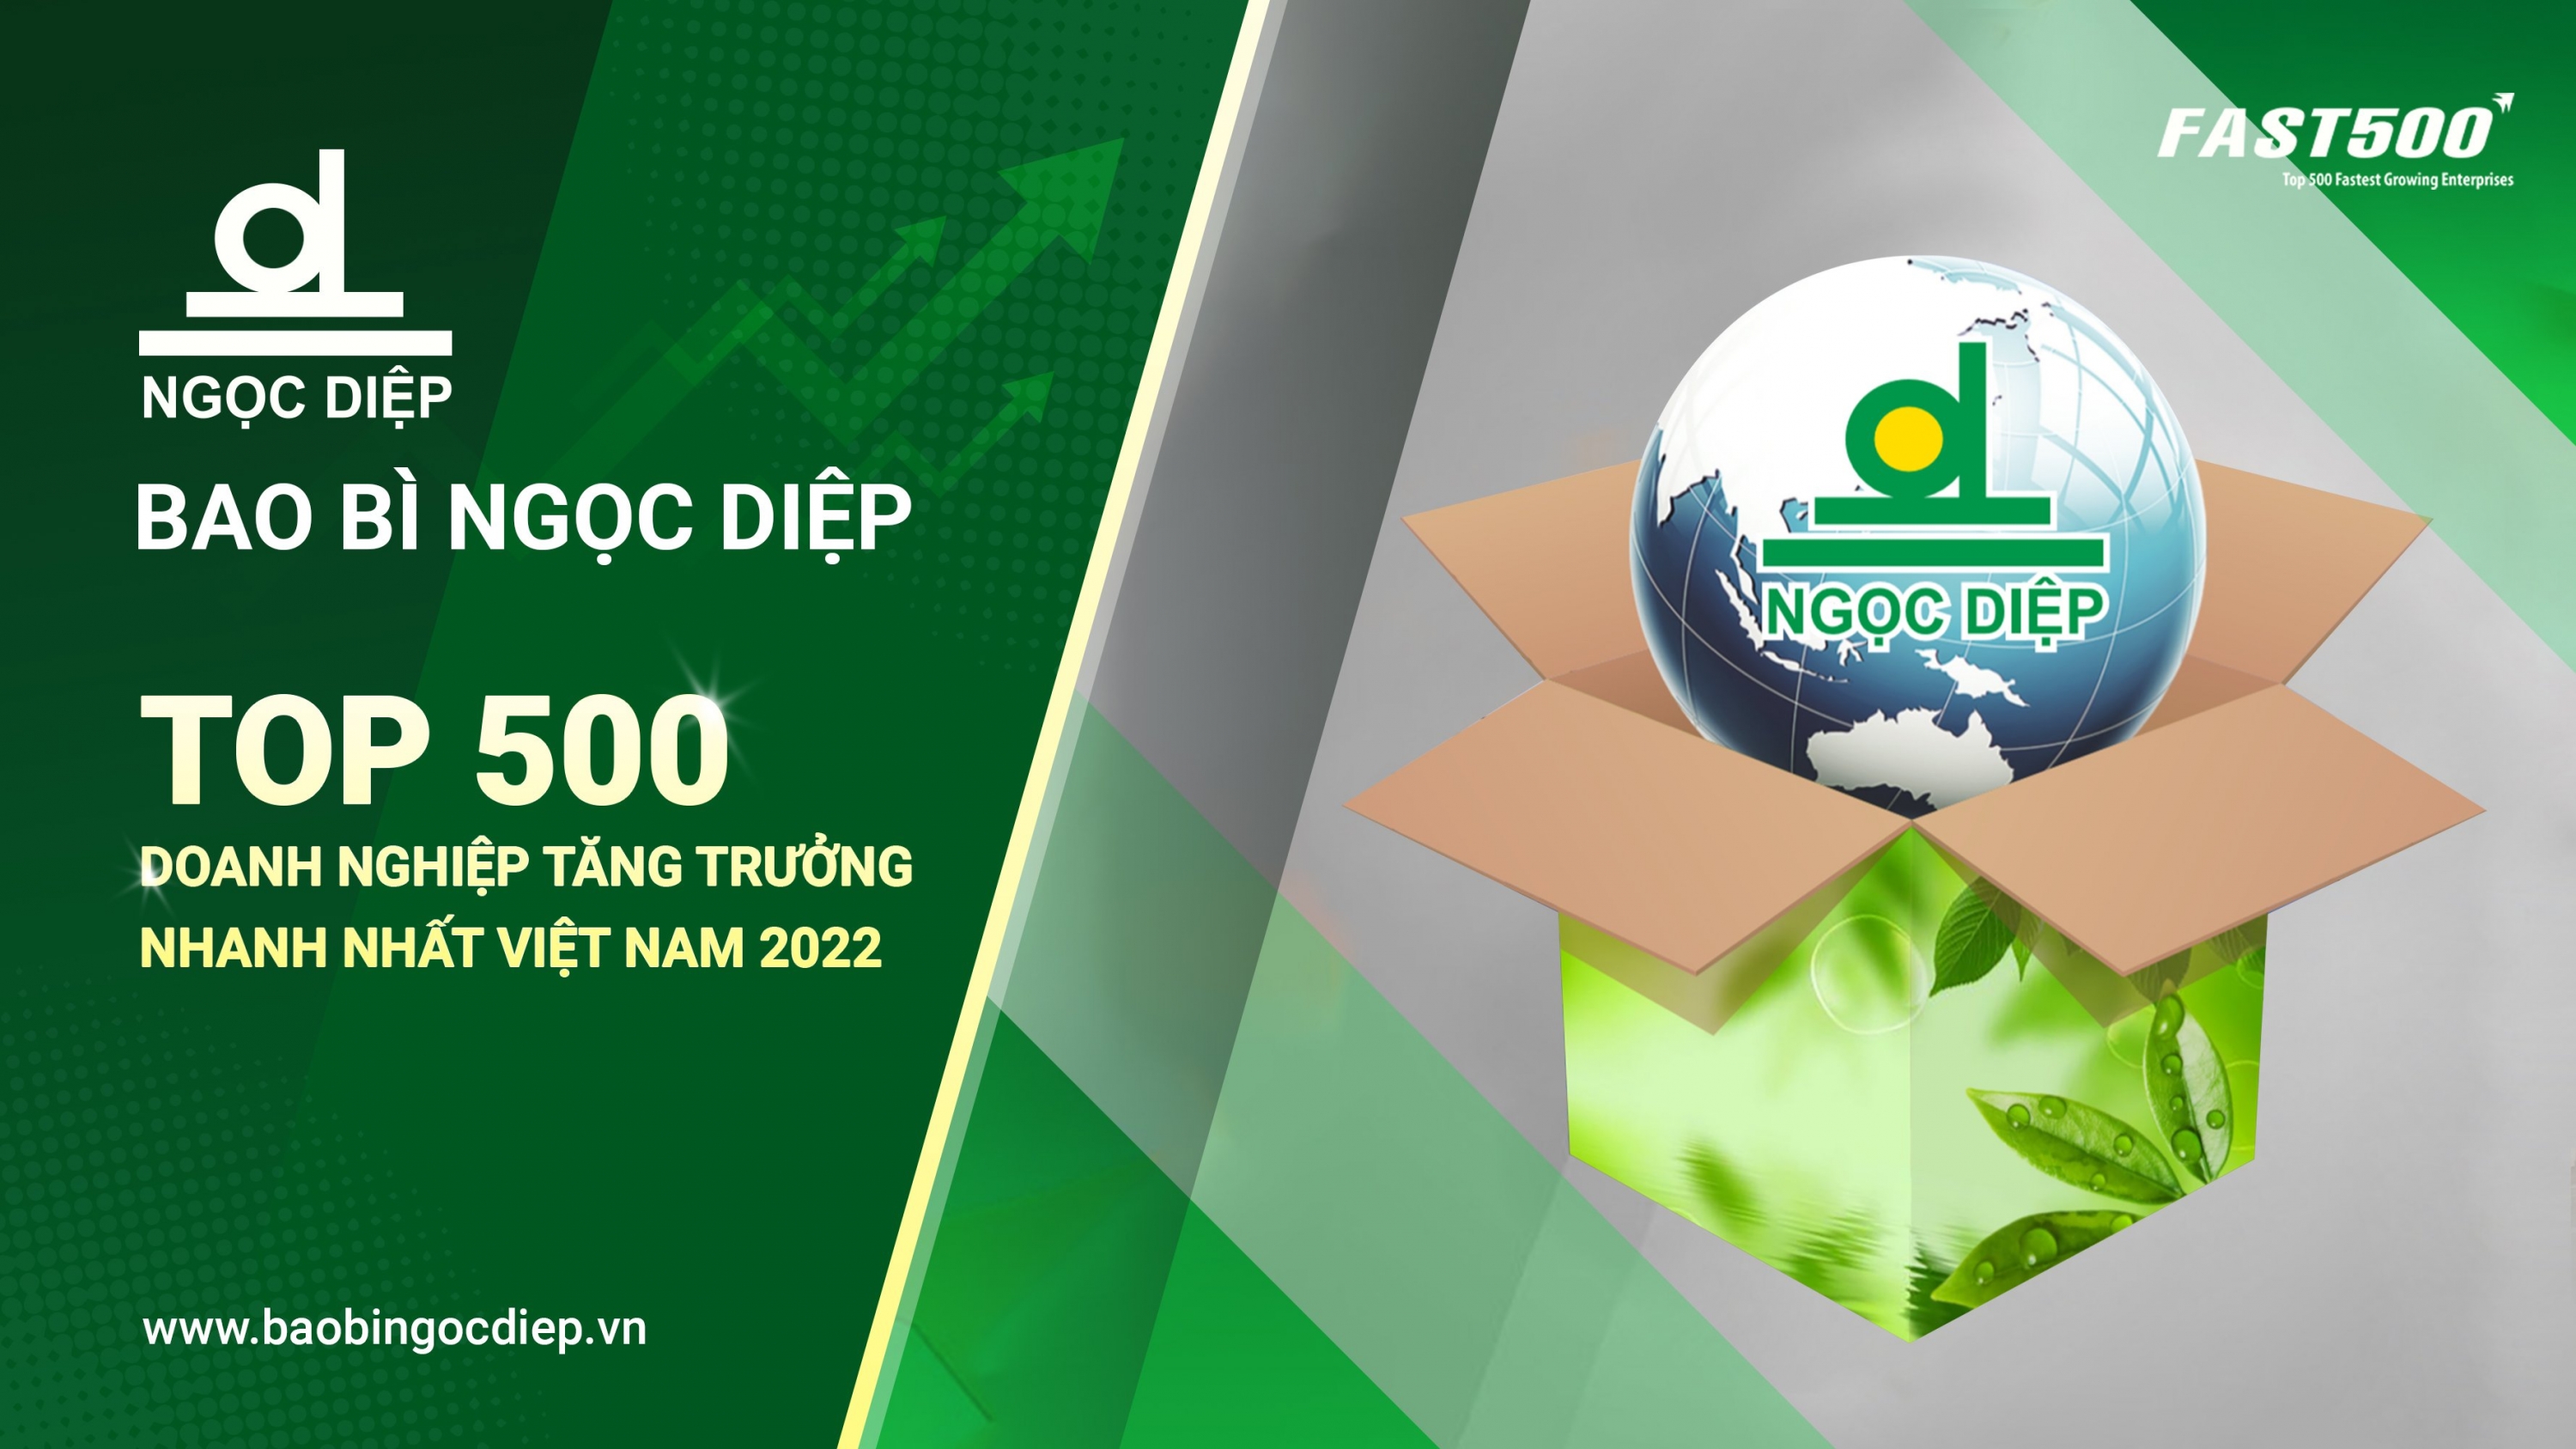 Bao bì Ngọc Diệp vinh dự nằm trong bảng xếp hạng FAST 500 - Top 500 doanh nghiệp tăng trưởng nhanh nhất Việt Nam năm 2022